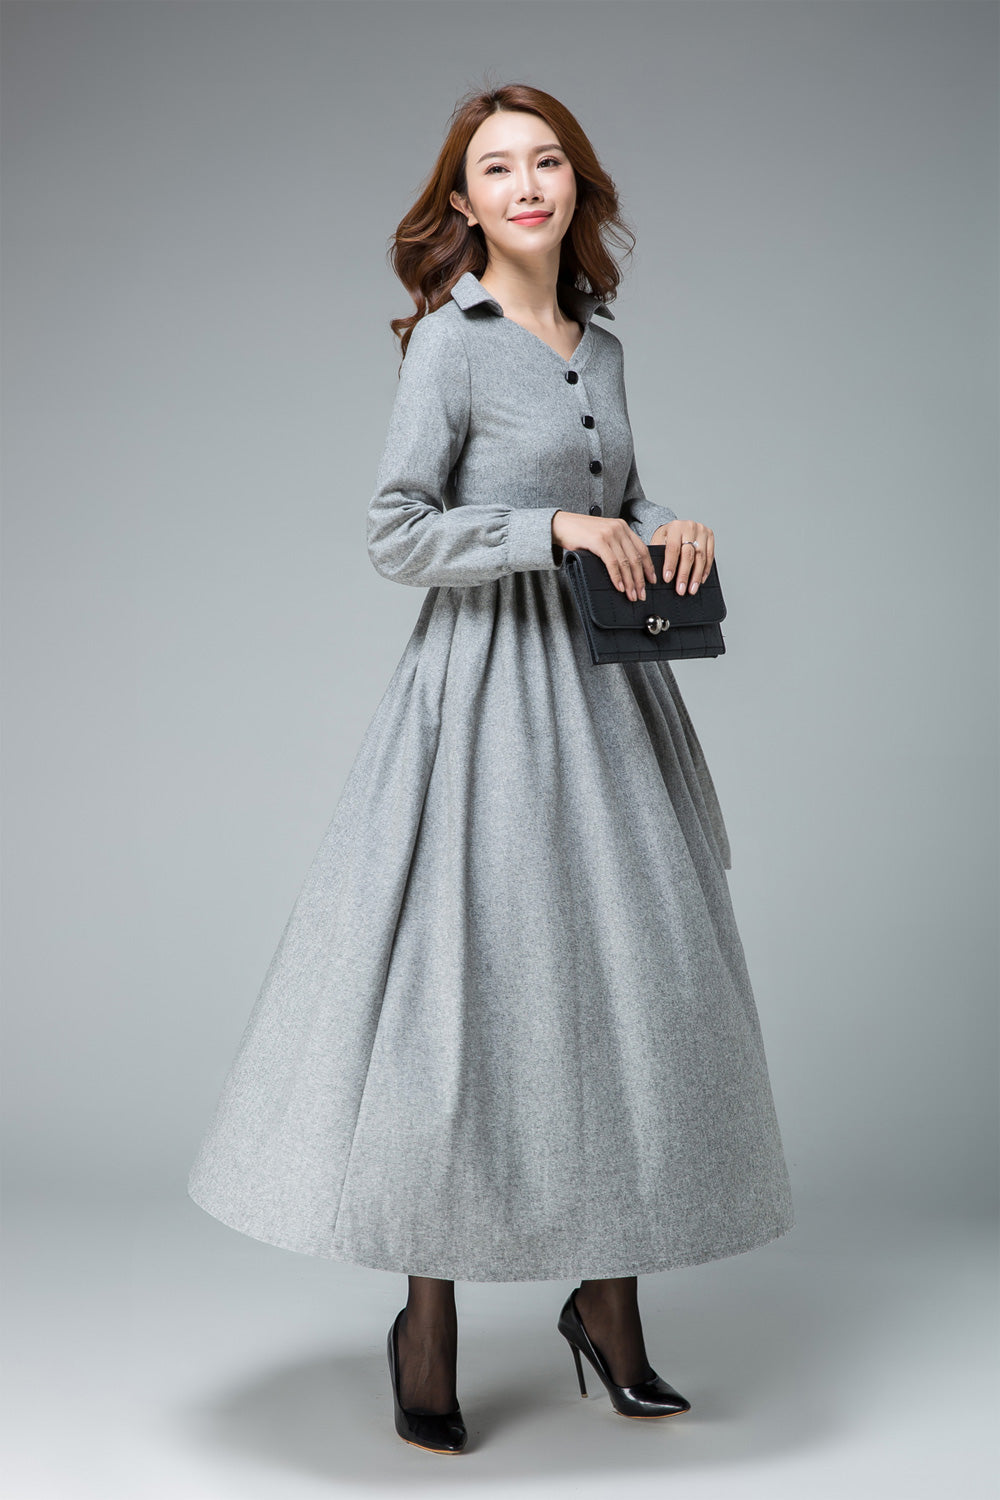 Shirt dress, wool dress, winter dress, maxi dress, pleated dress, warm –  XiaoLizi